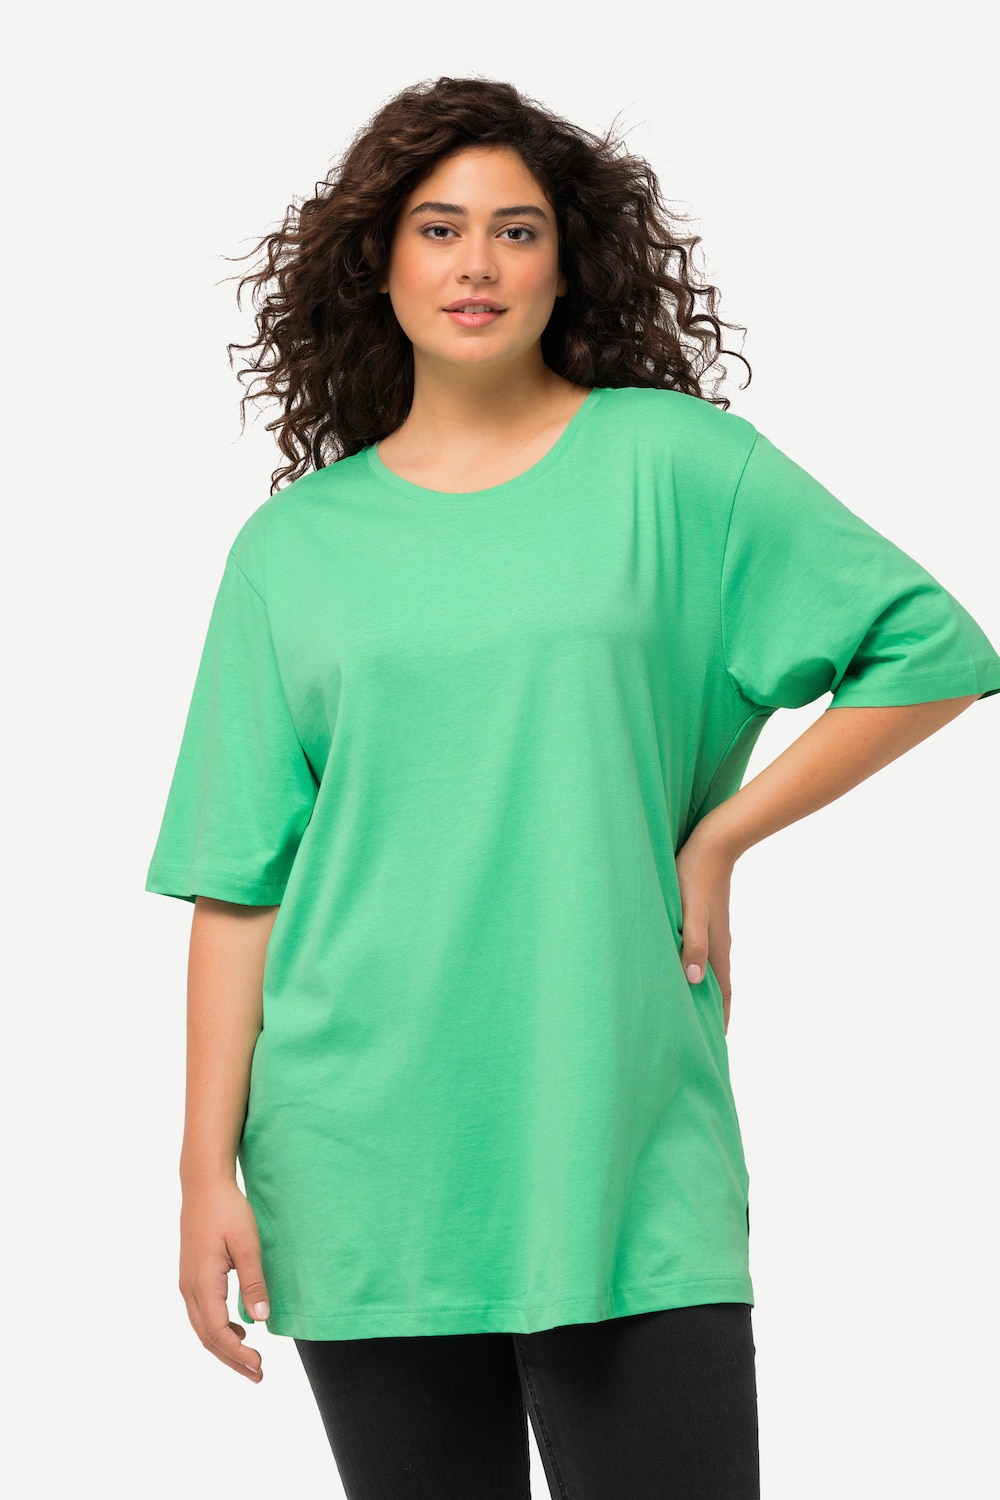 Grote Maten T-Shirt, Dames, turquoise, Maat: 58/60, Ulla Popken